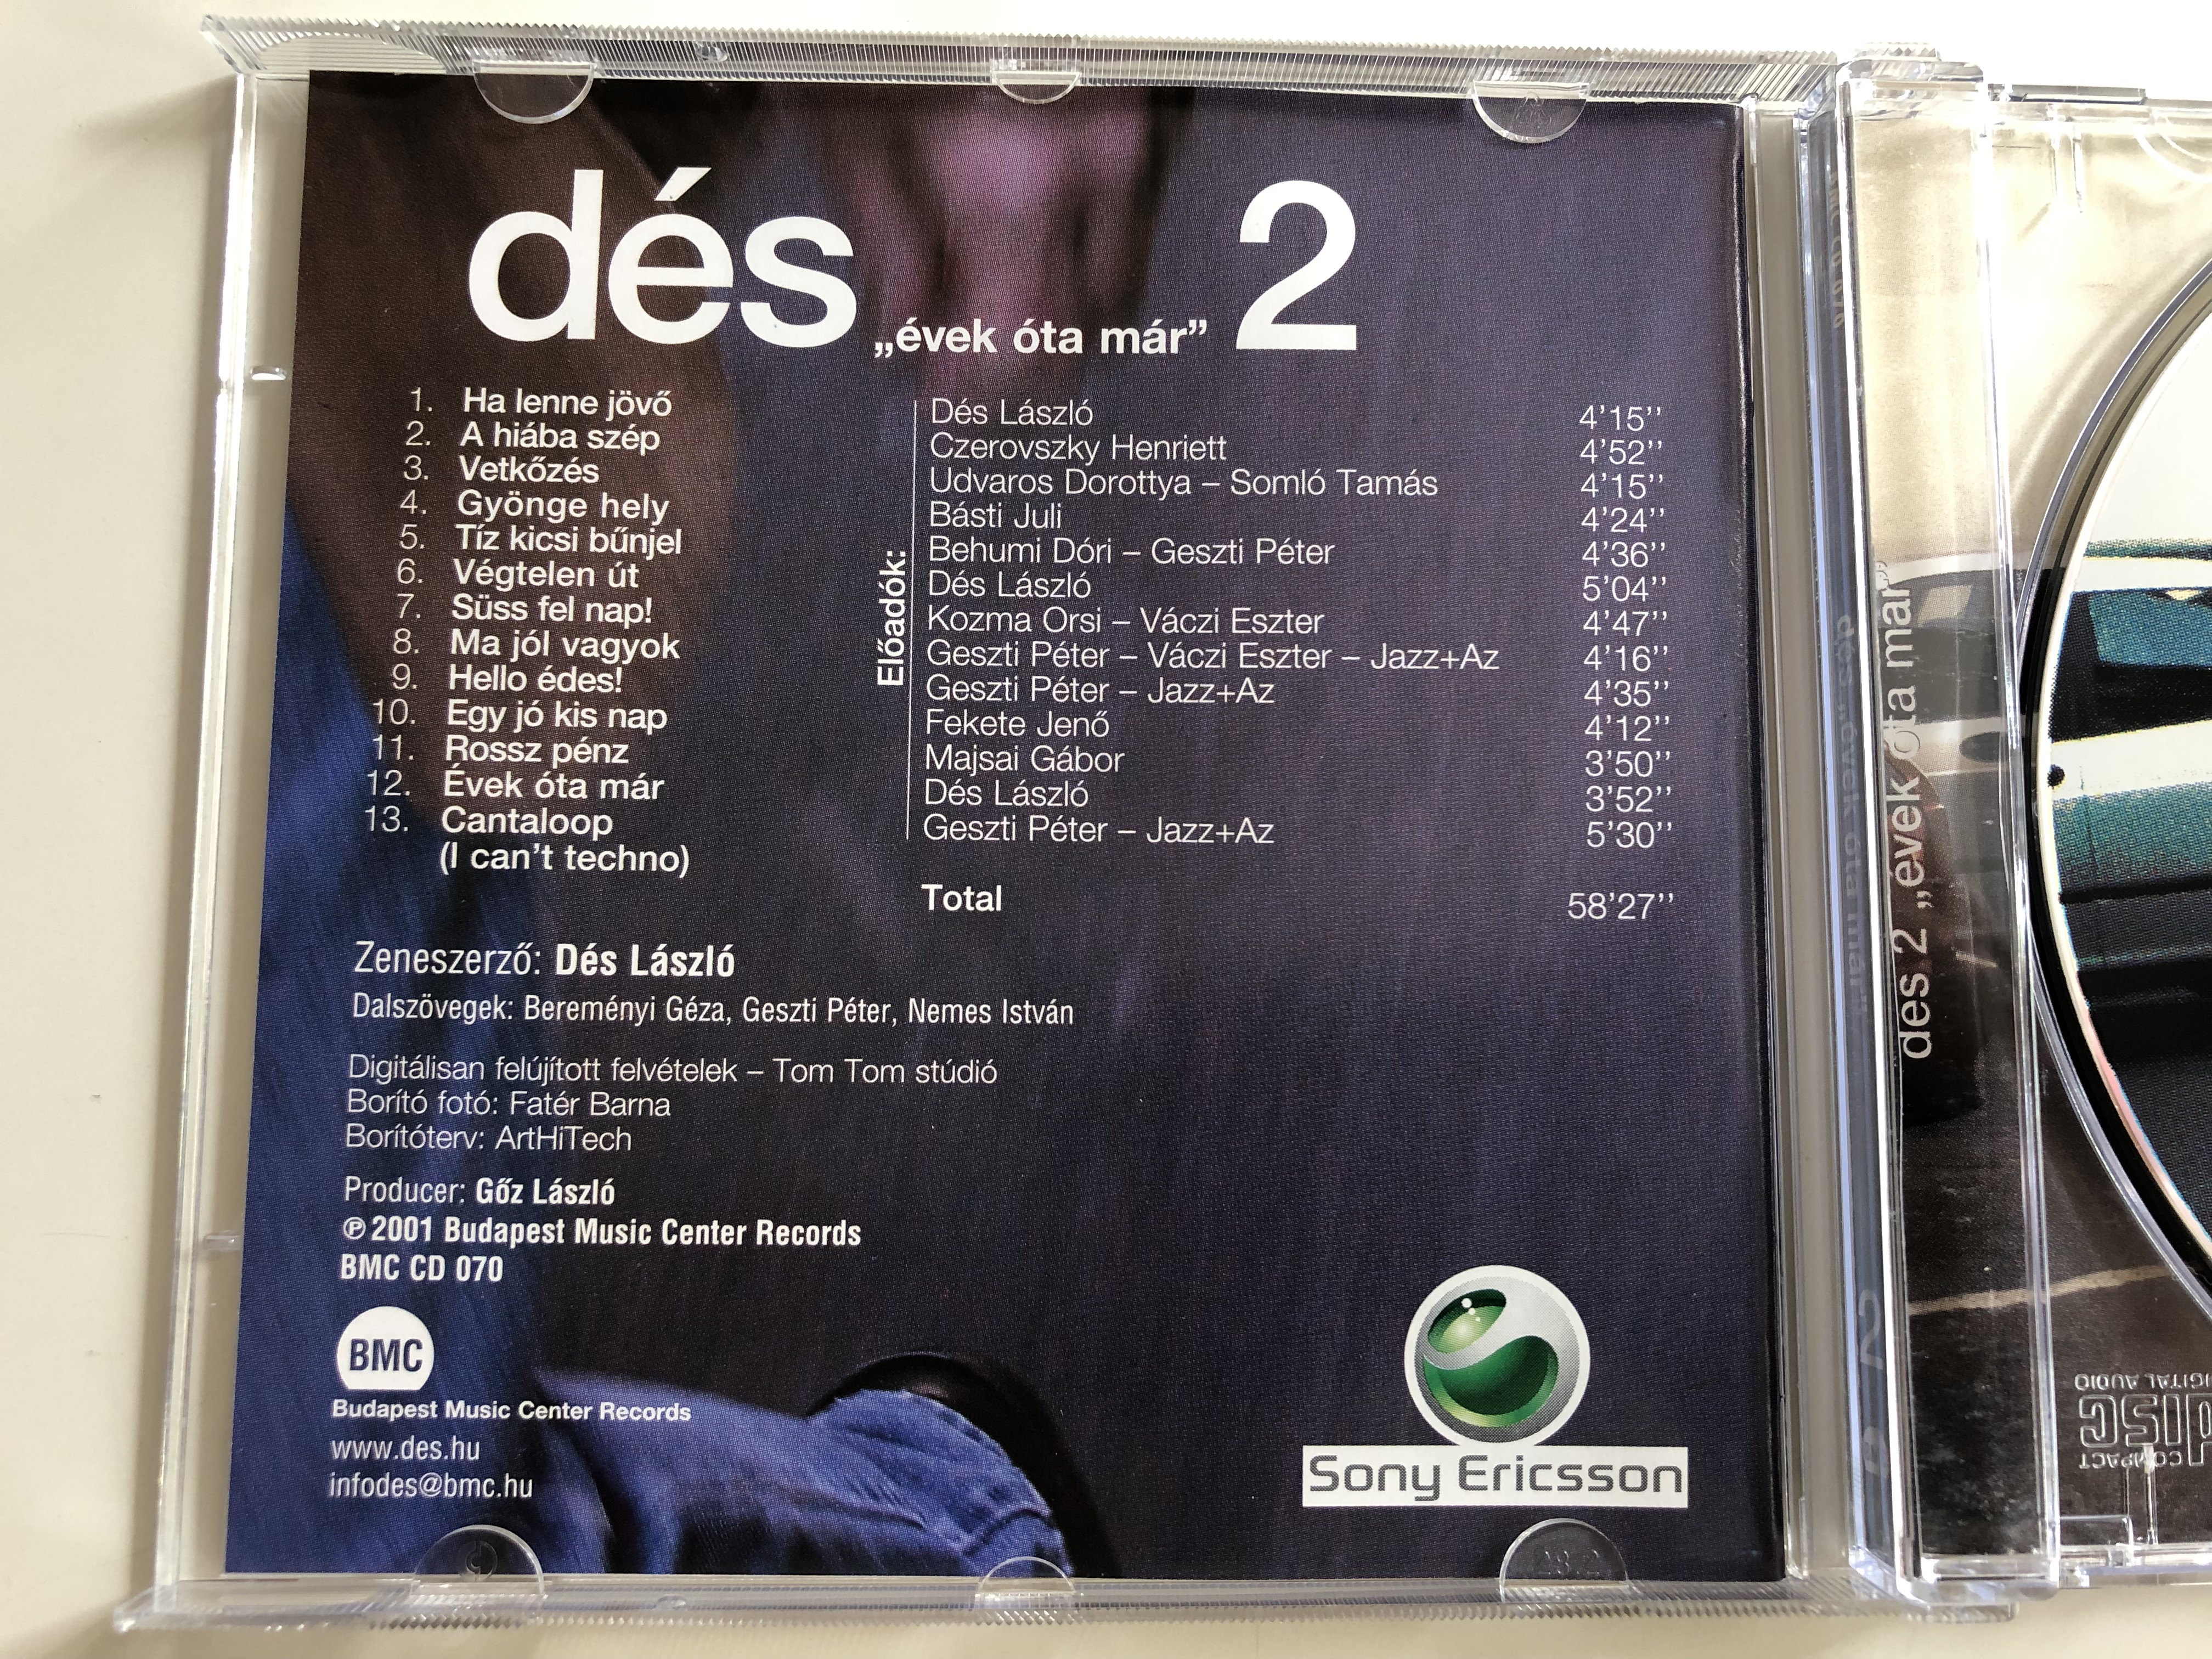 d-s-vek-ta-m-r-2-budapest-music-center-records-audio-cd-2001-bmc-cd-070-9-.jpg